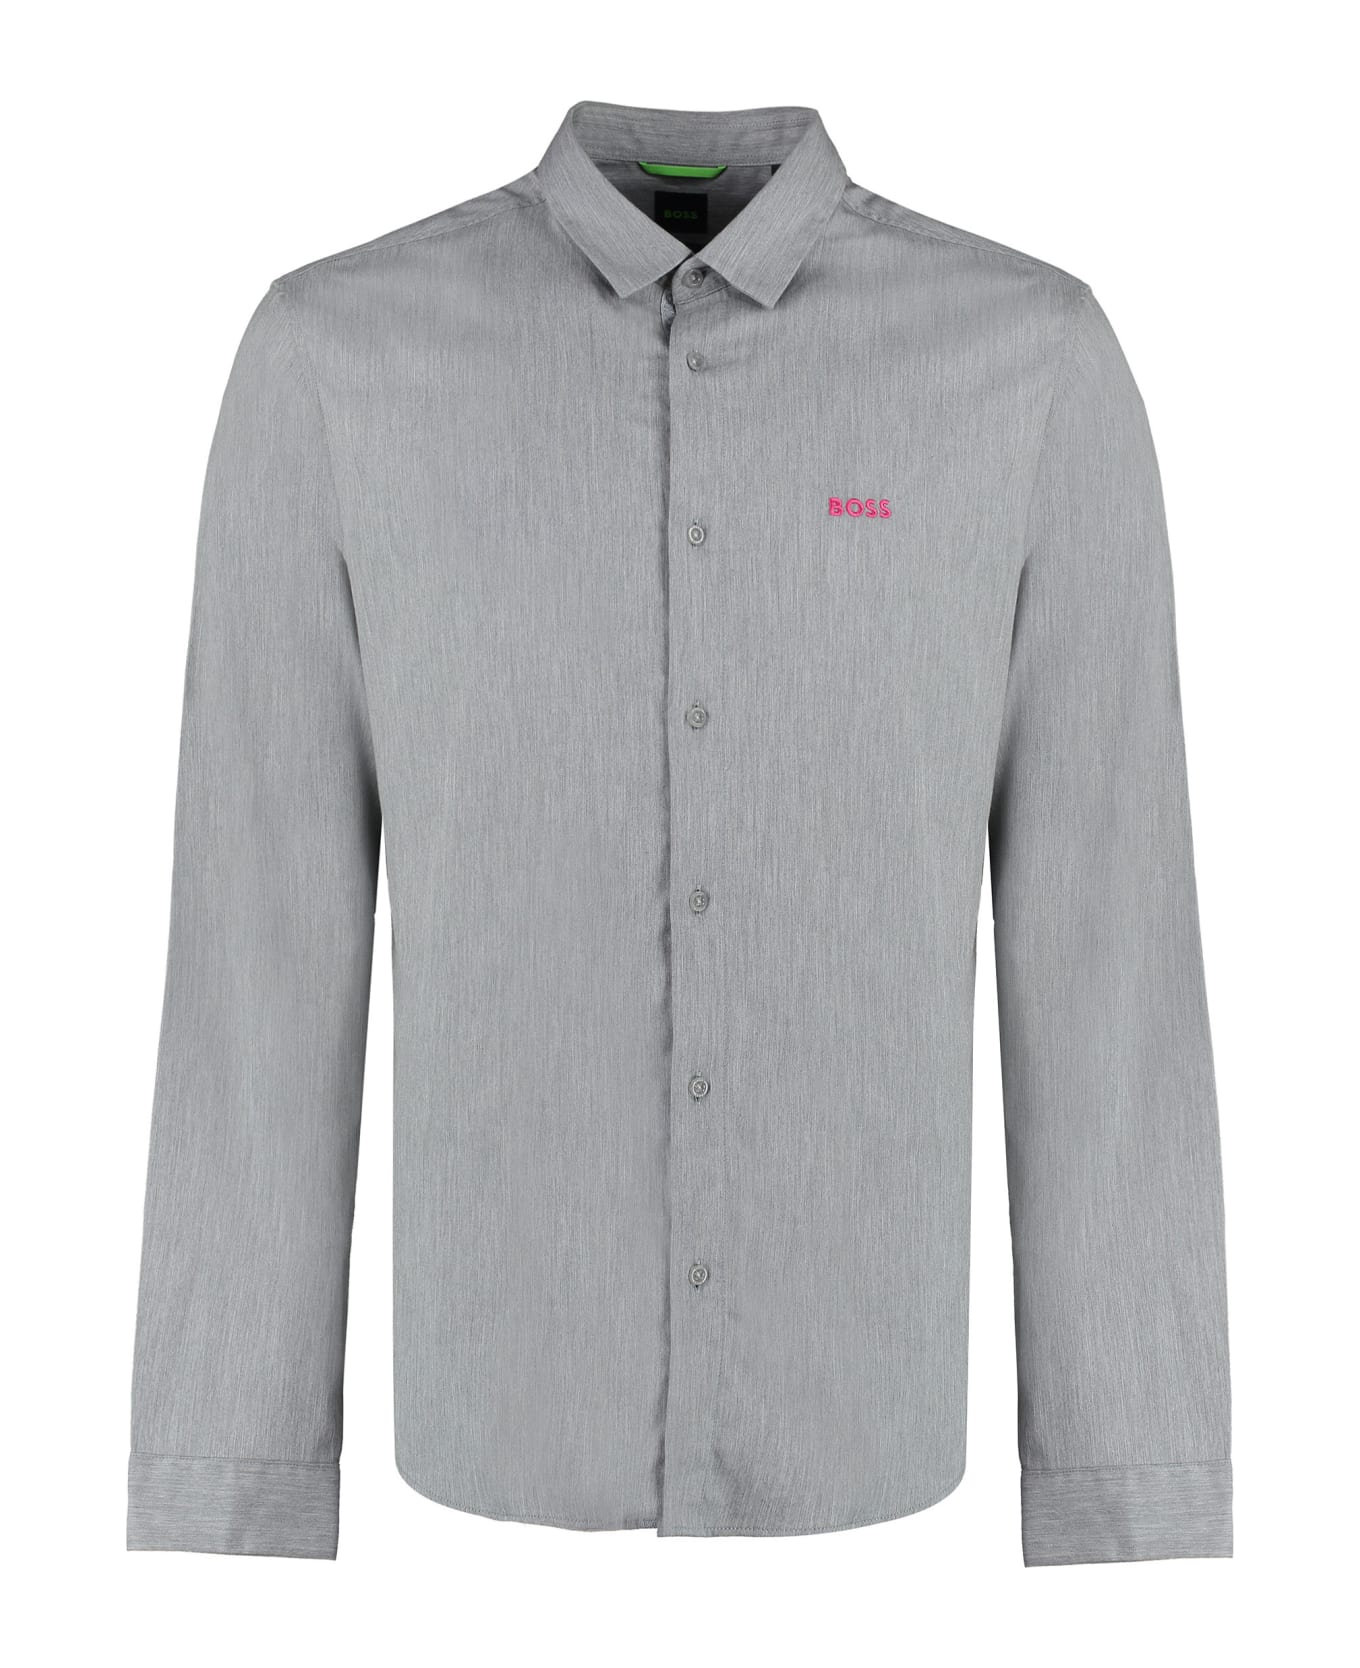 Hugo Boss Cotton Blend Shirt - grey